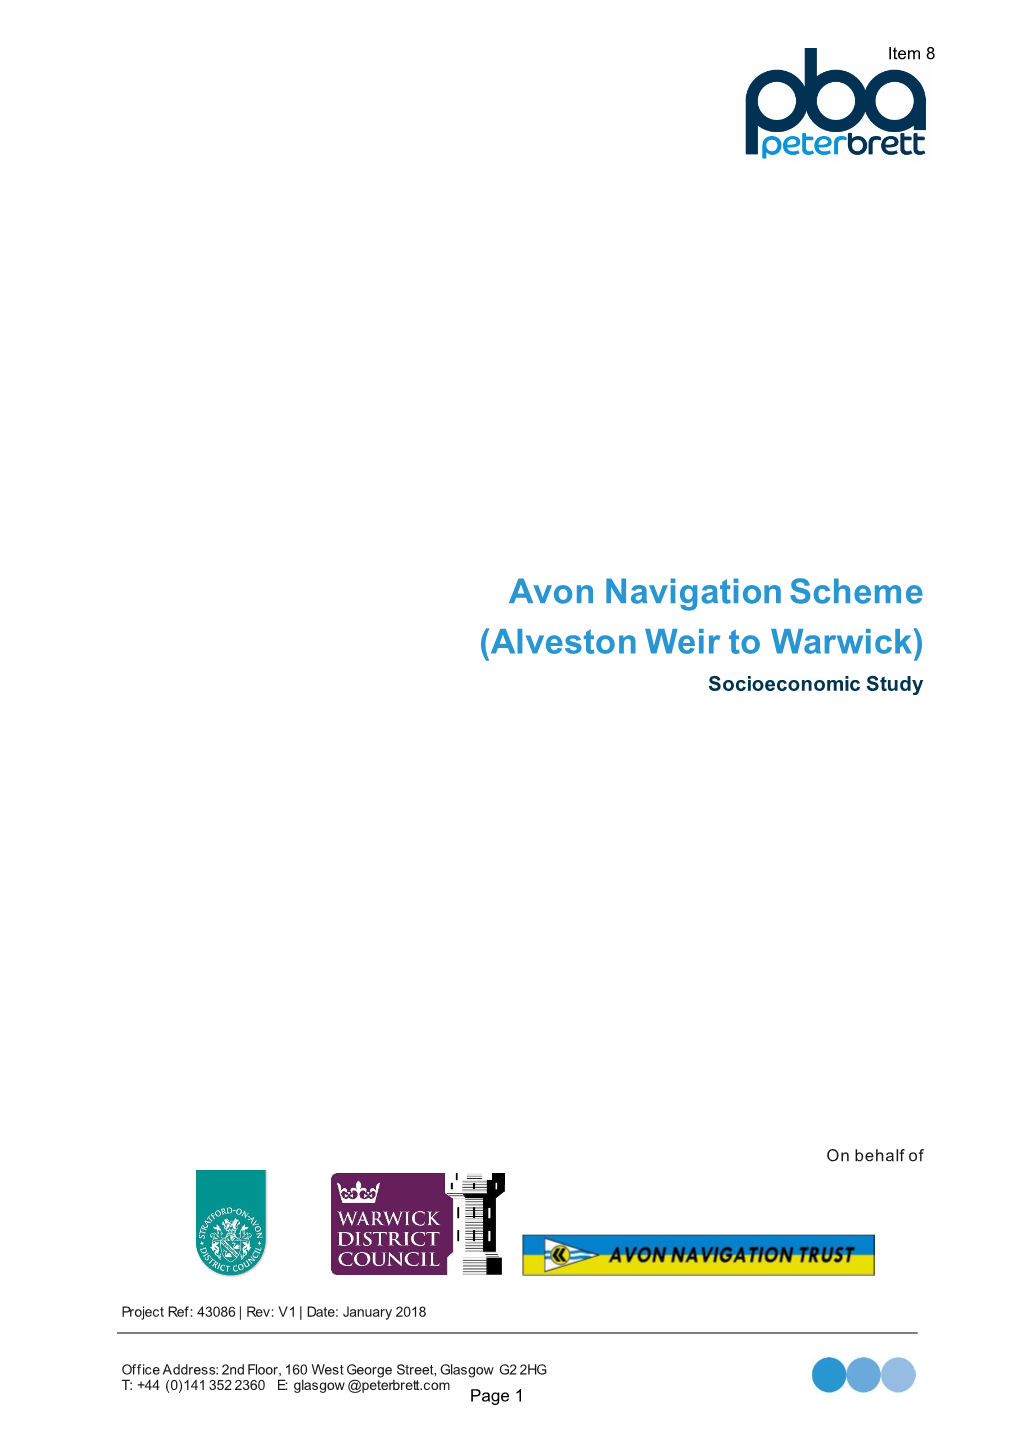 Avon Navigation Scheme (Alveston Weir to Warwick) Socioeconomic Study